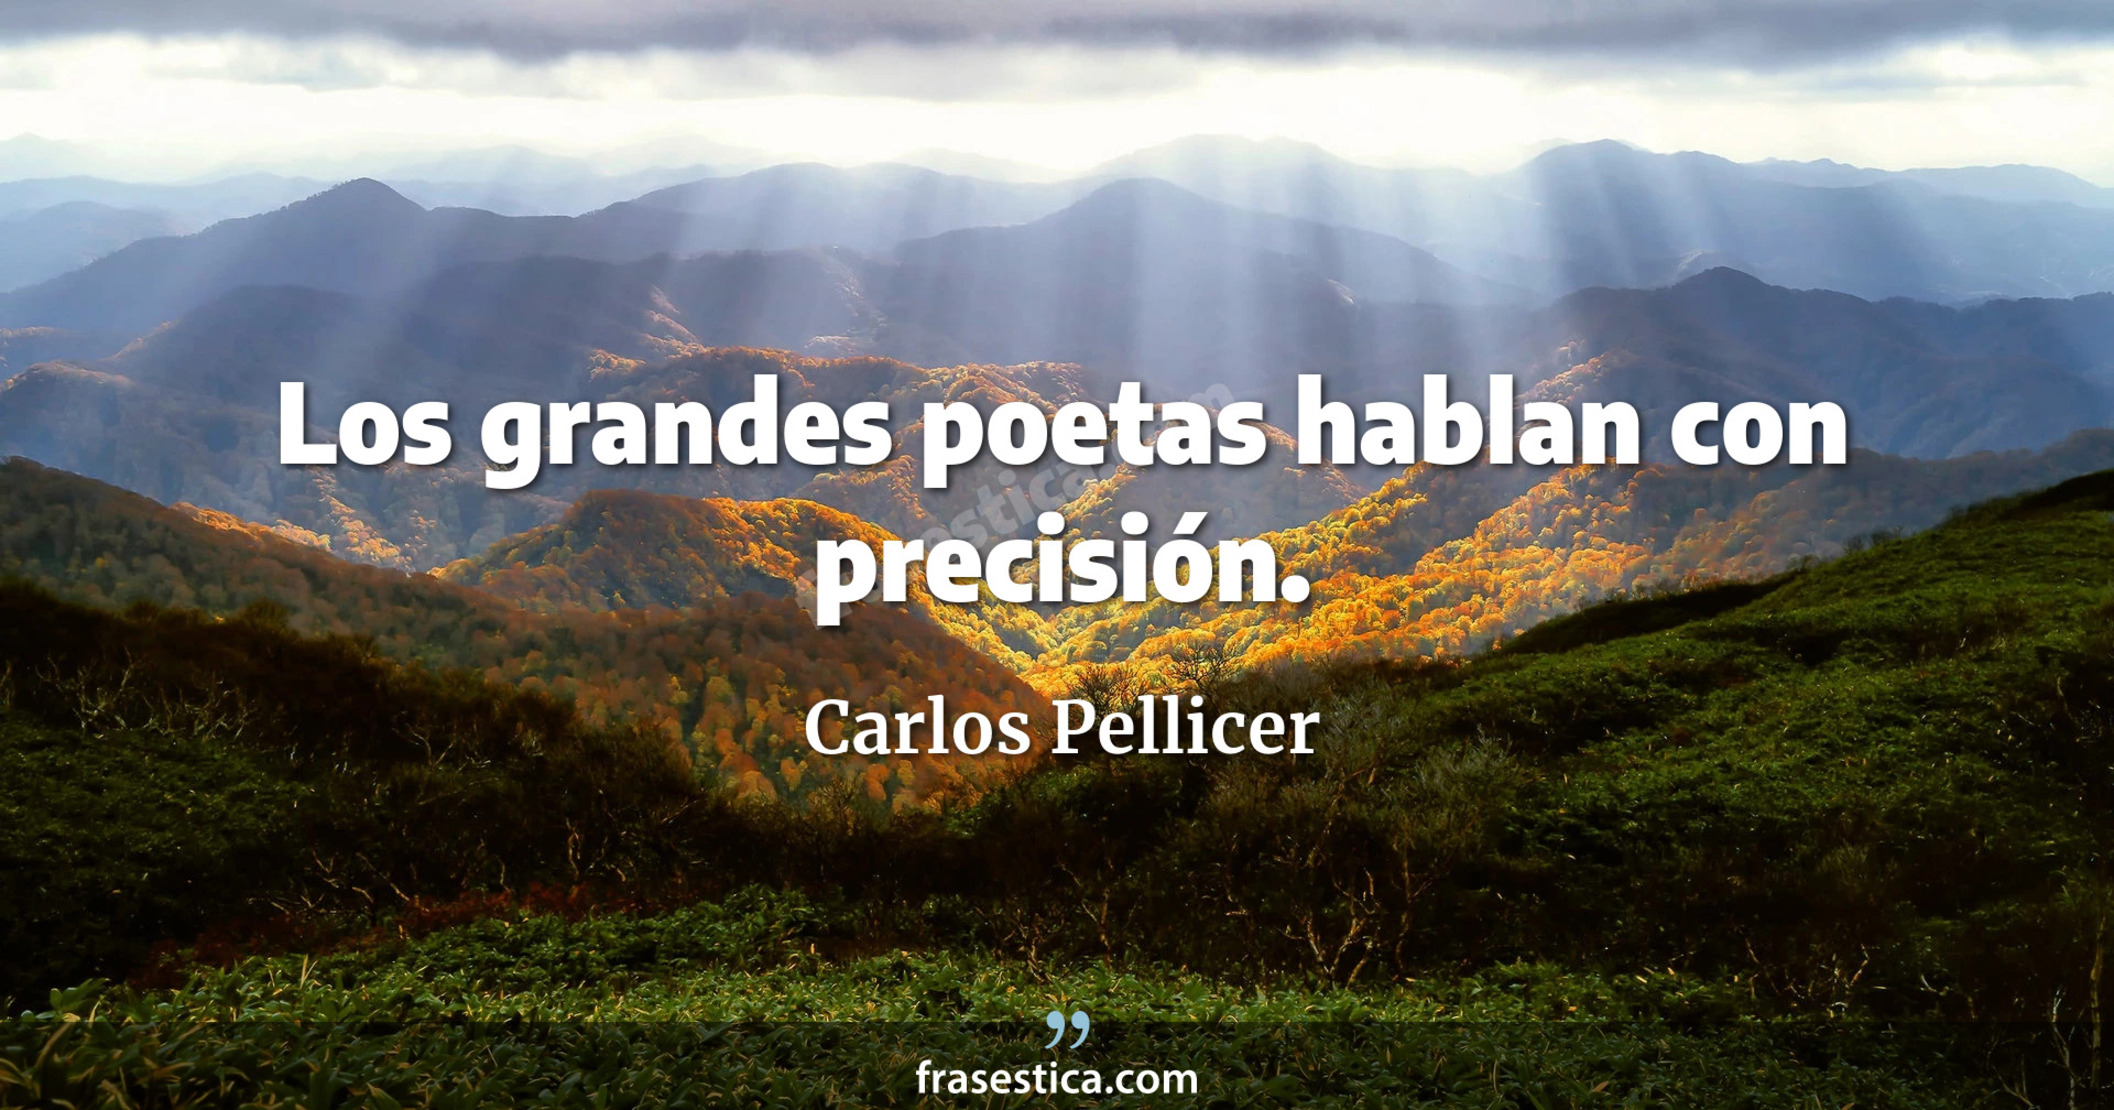 Los grandes poetas hablan con precisión. - Carlos Pellicer